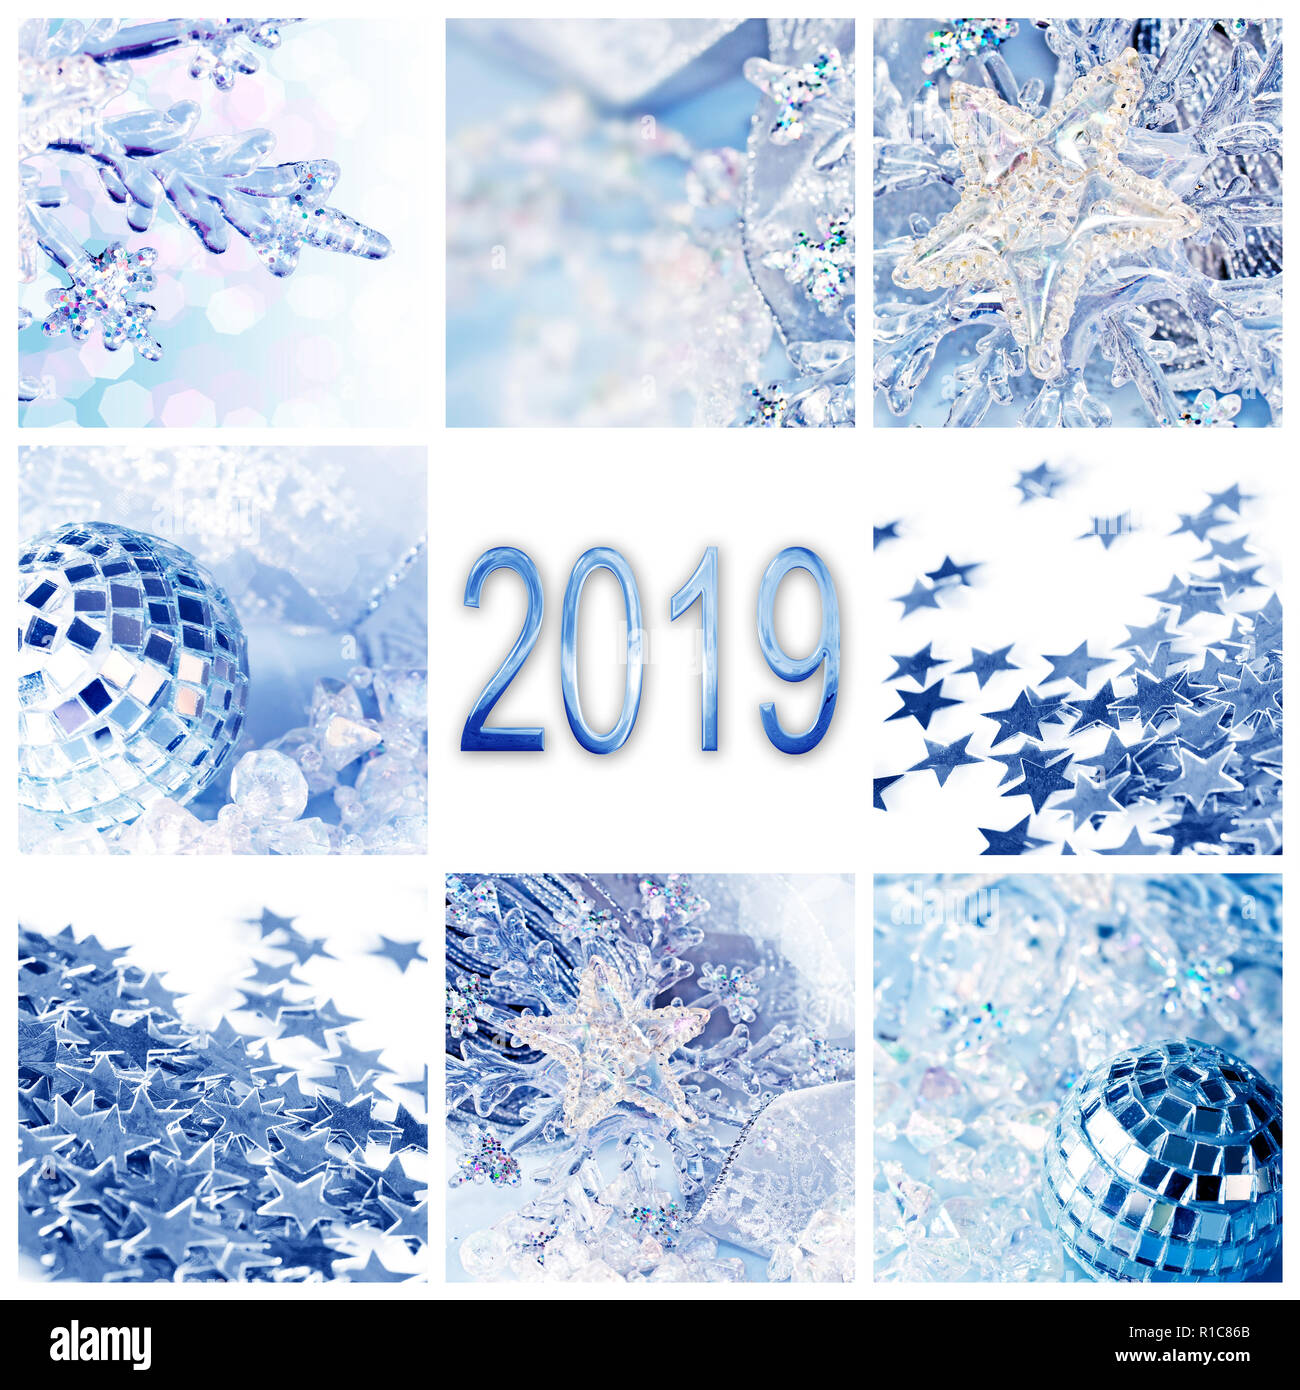 2019, adornos de navidad collage cuadrado azul tarjeta de felicitación Foto de stock